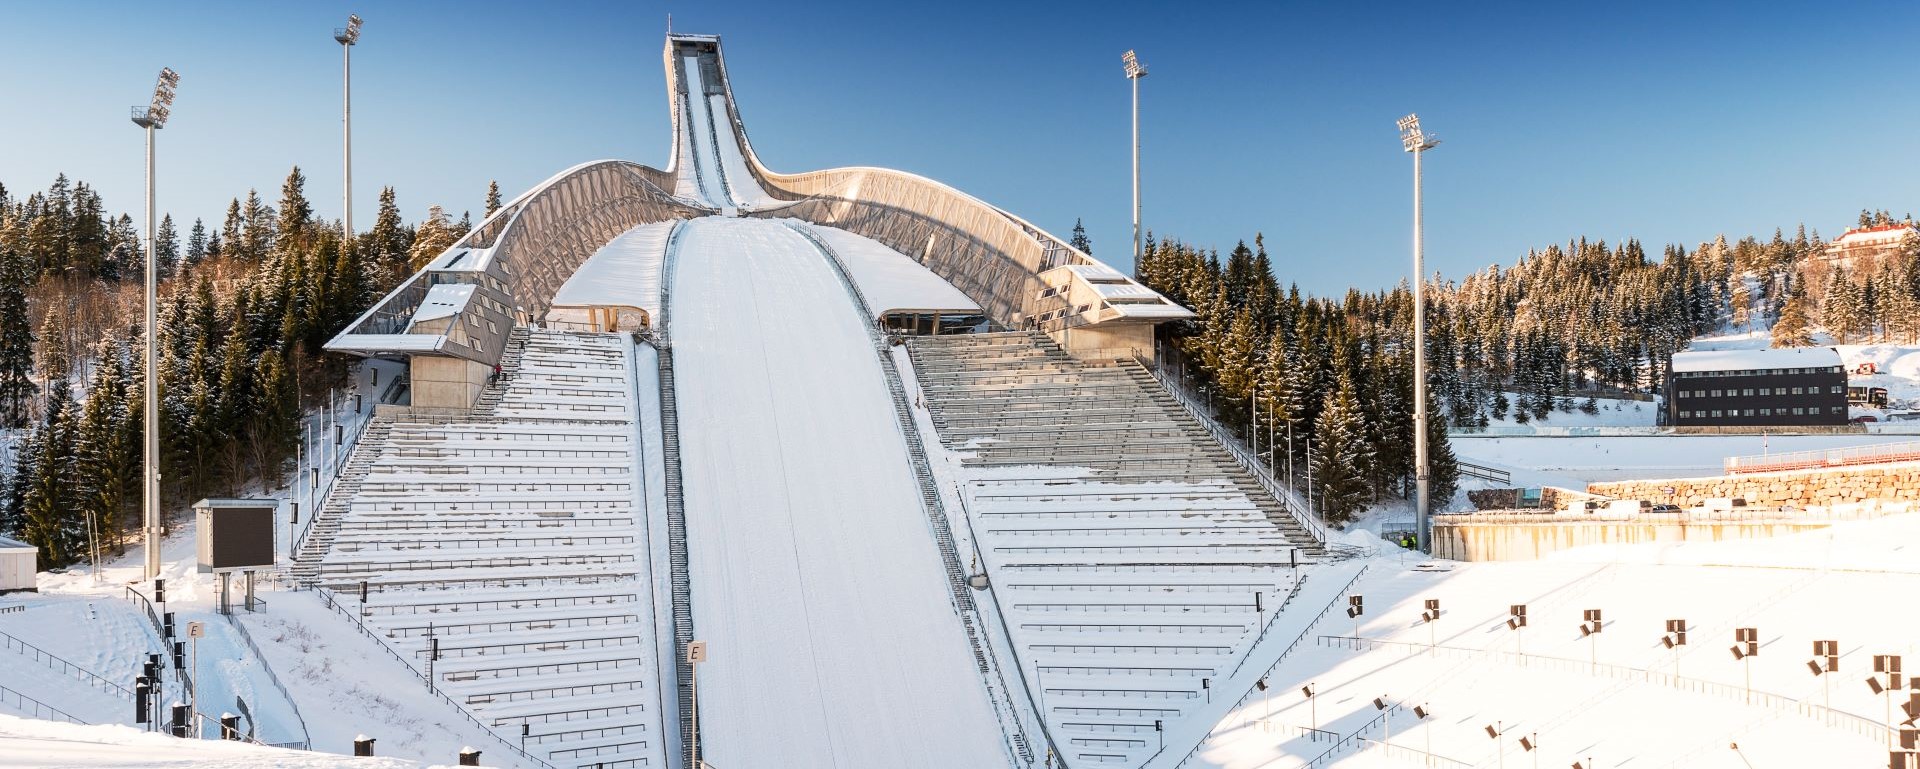 Fis Cup w skokach narciarskich: Szwajcaria – Kandersteg